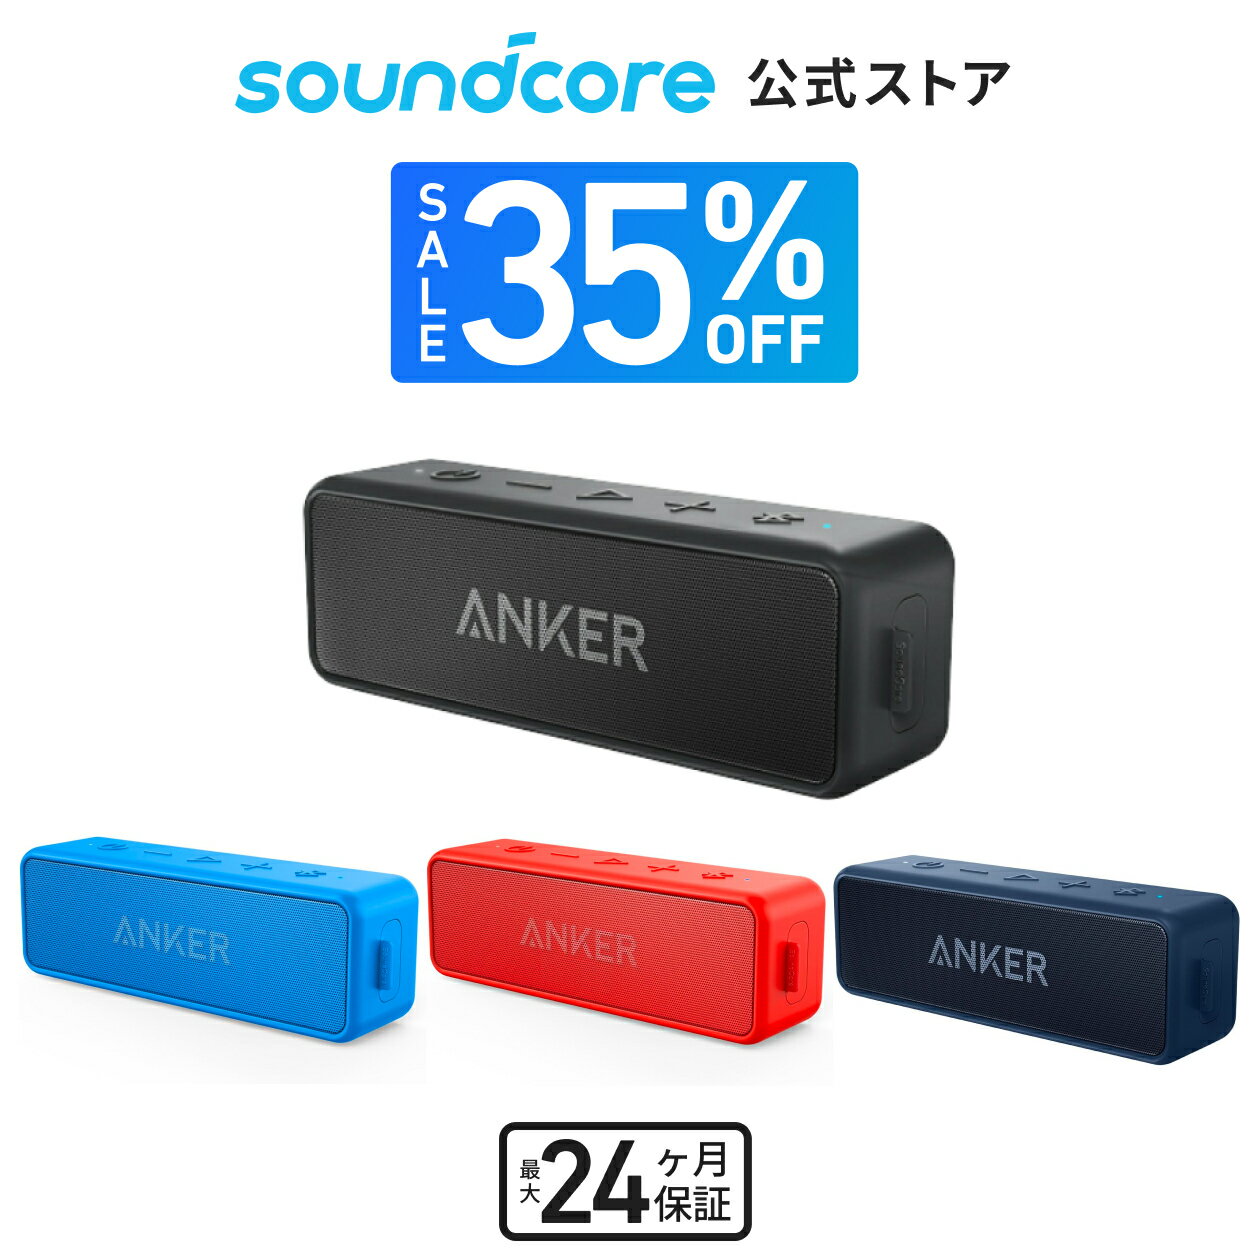 【30%OFFクーポン 6/11まで】Anker Soundcore Motion X600 Bluetoothスピーカー【空間オーディオ/ハイレゾ音源再生 / 50W出力 / IPX7防水規格 / 最大12時間再生 / Proイコライザー機能/AUX対応】